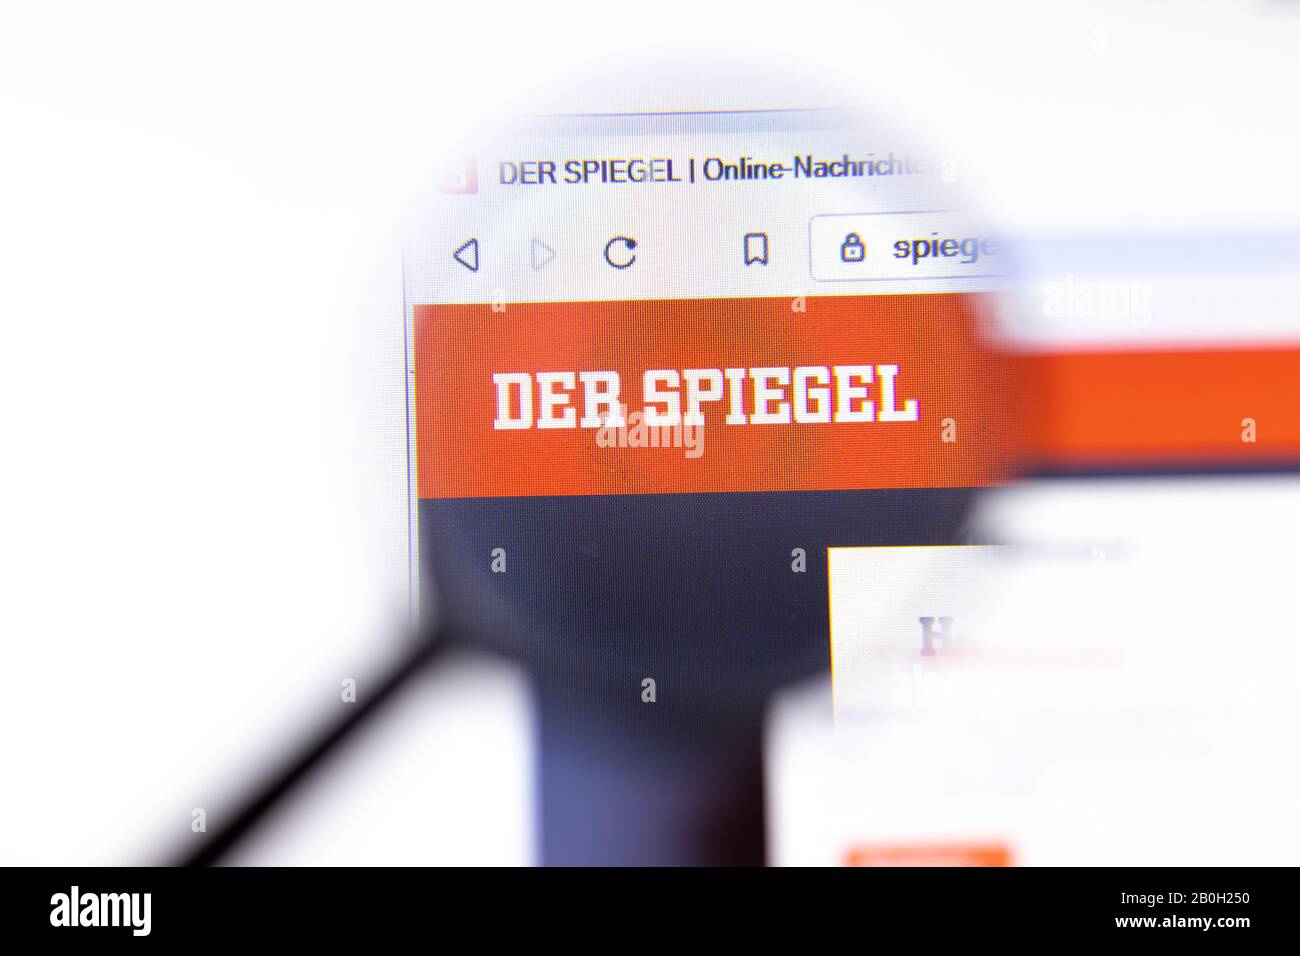 Los Angeles, California, EE.UU. - 18.02.2020: Página web de der Spiegel con logotipo de primer plano. Spiegel.de icono del sitio en pantalla, editorial Ilustrativa Foto de stock